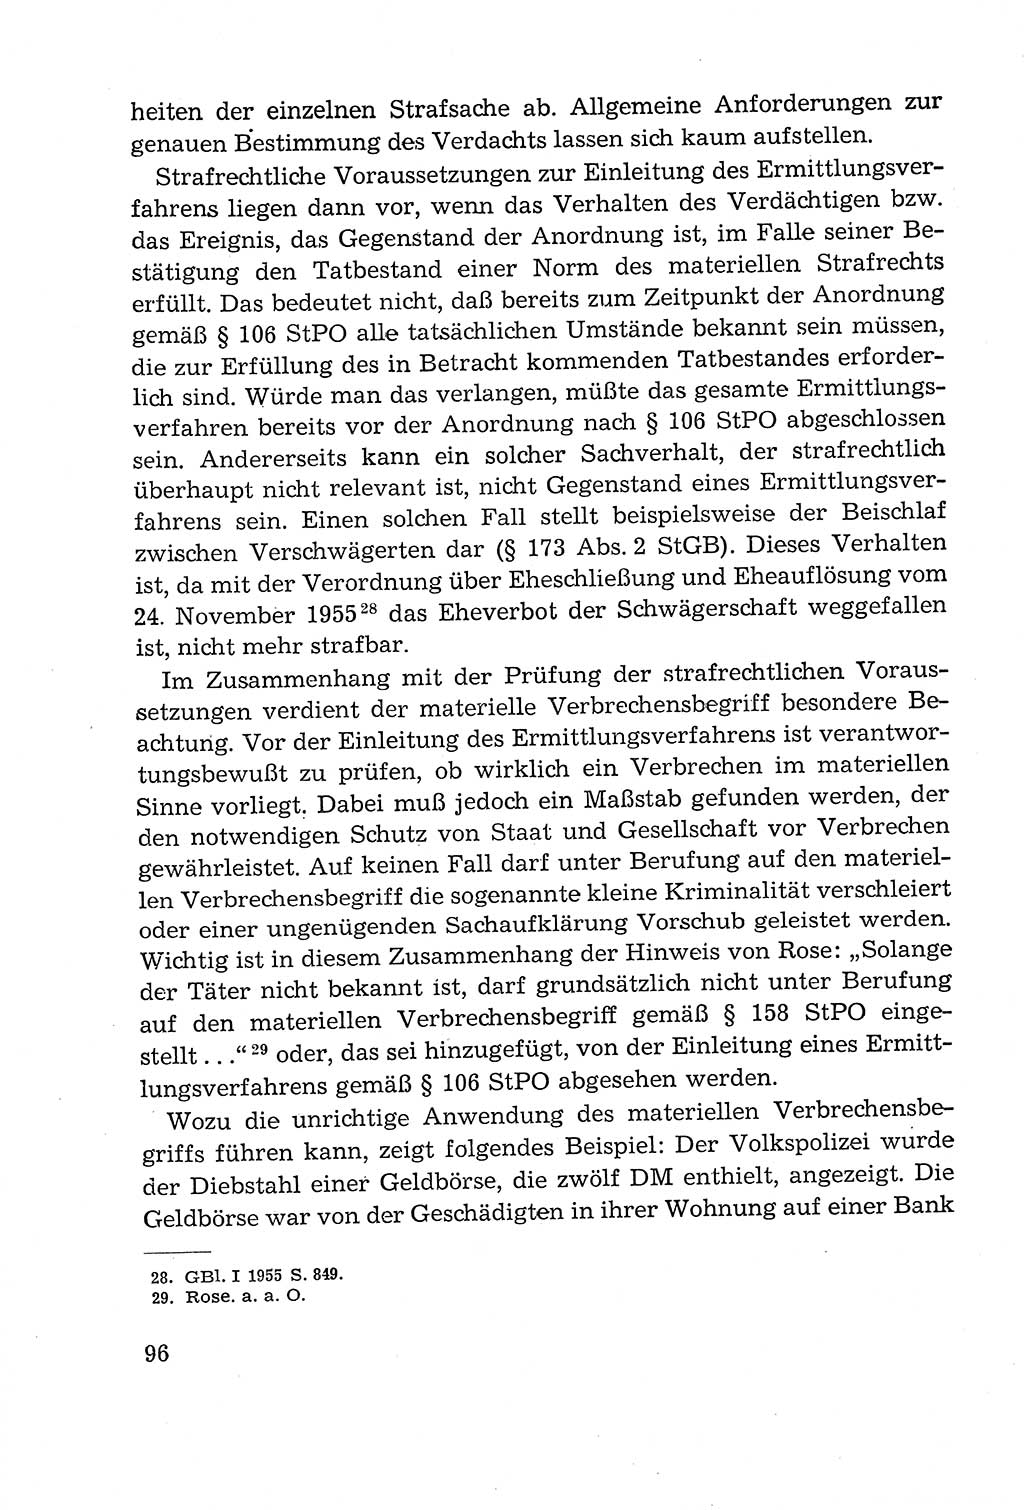 Leitfaden des StrafprozeÃŸrechts der Deutschen Demokratischen Republik (DDR) 1959, Seite 96 (LF StPR DDR 1959, S. 96)